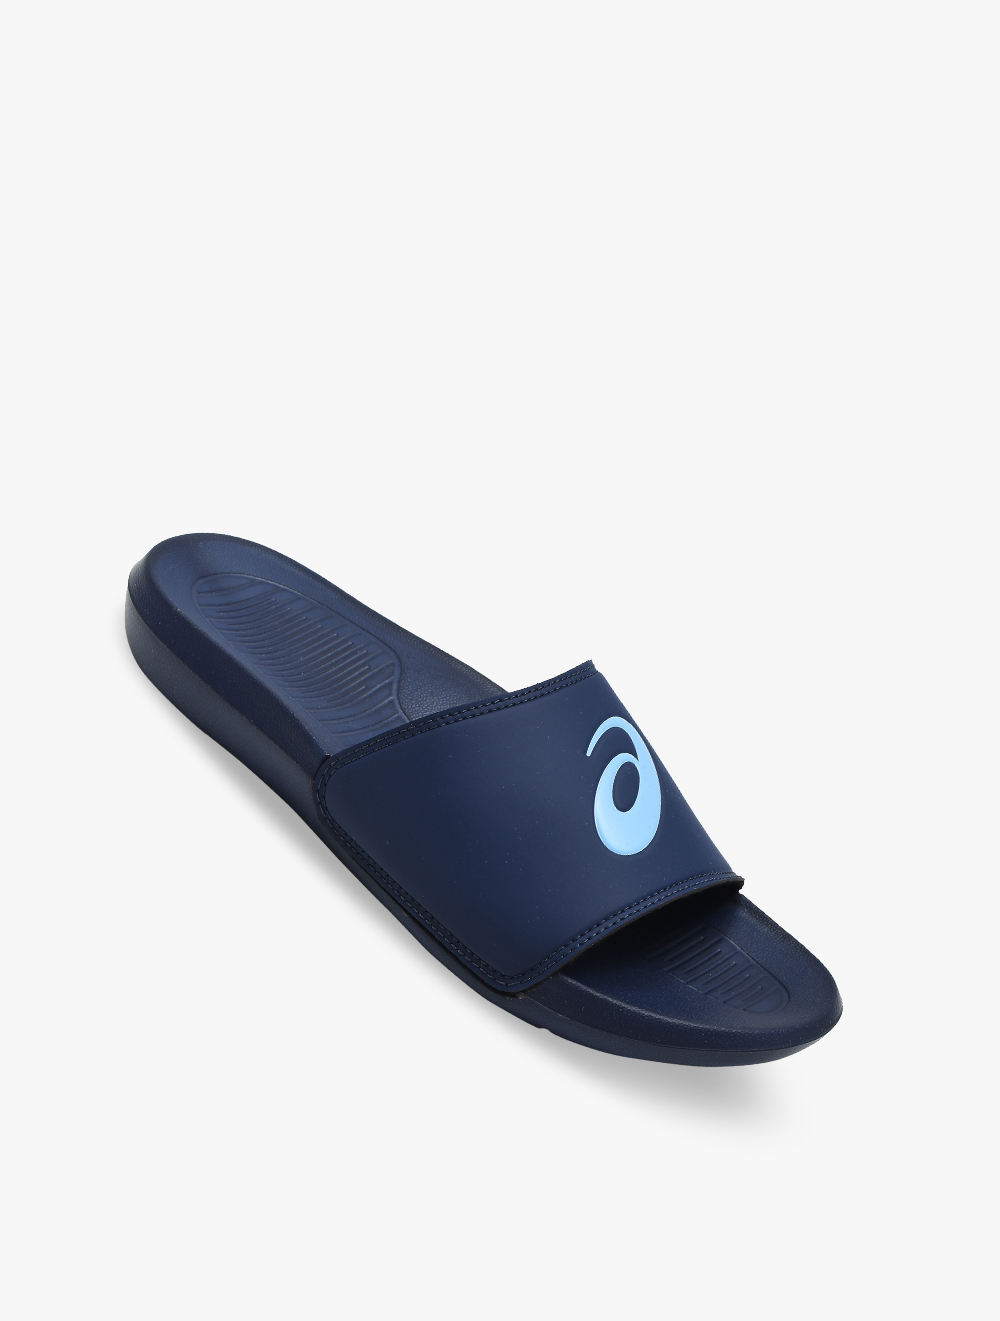 asics slide sandals